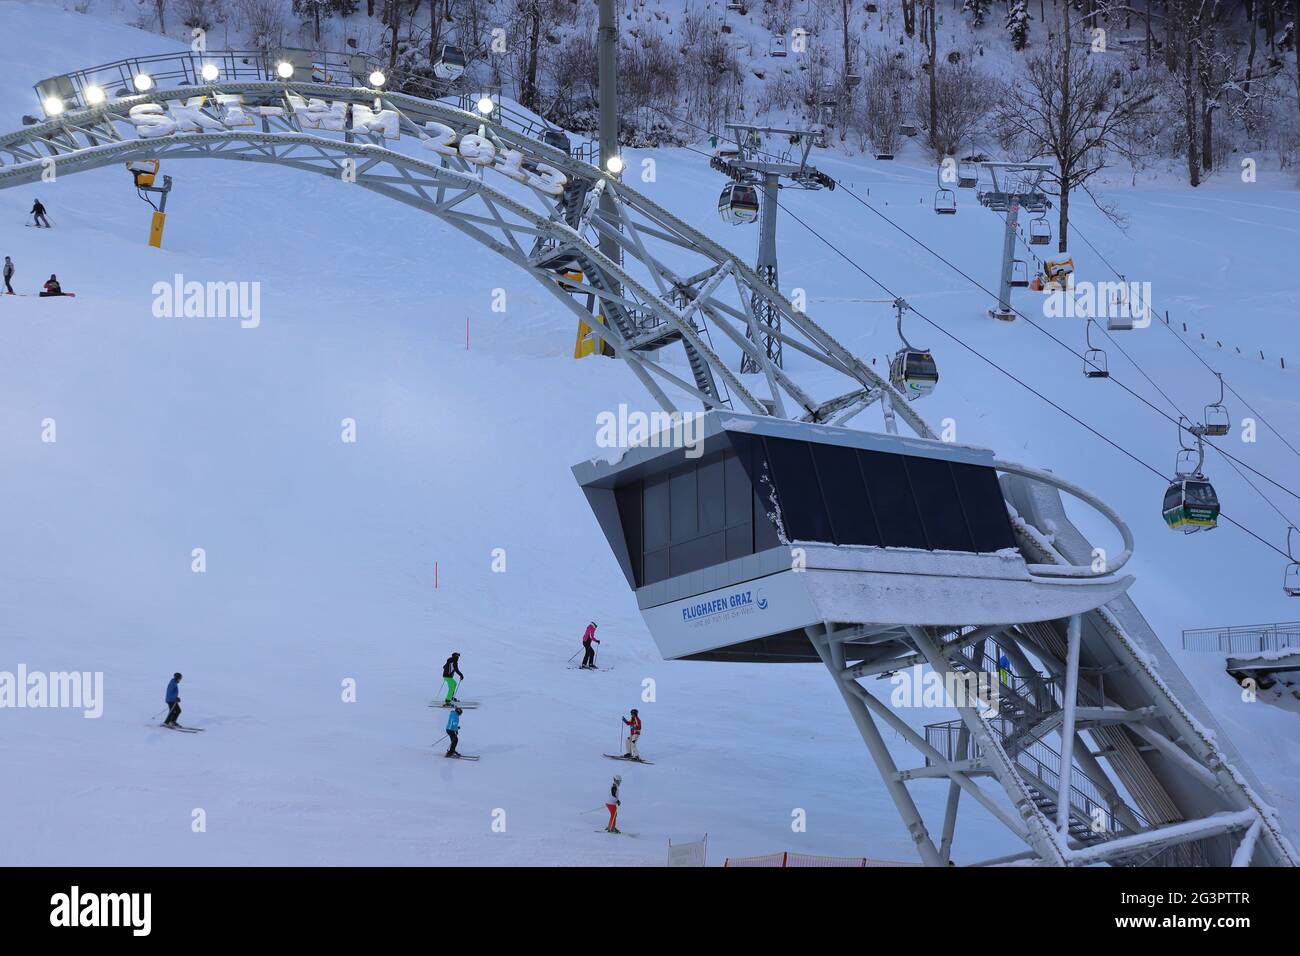 AUSTRIA, STYRIA, SCHLADMING - January 18, 2019: Skygate over the Planai ski stadium Stock Photo